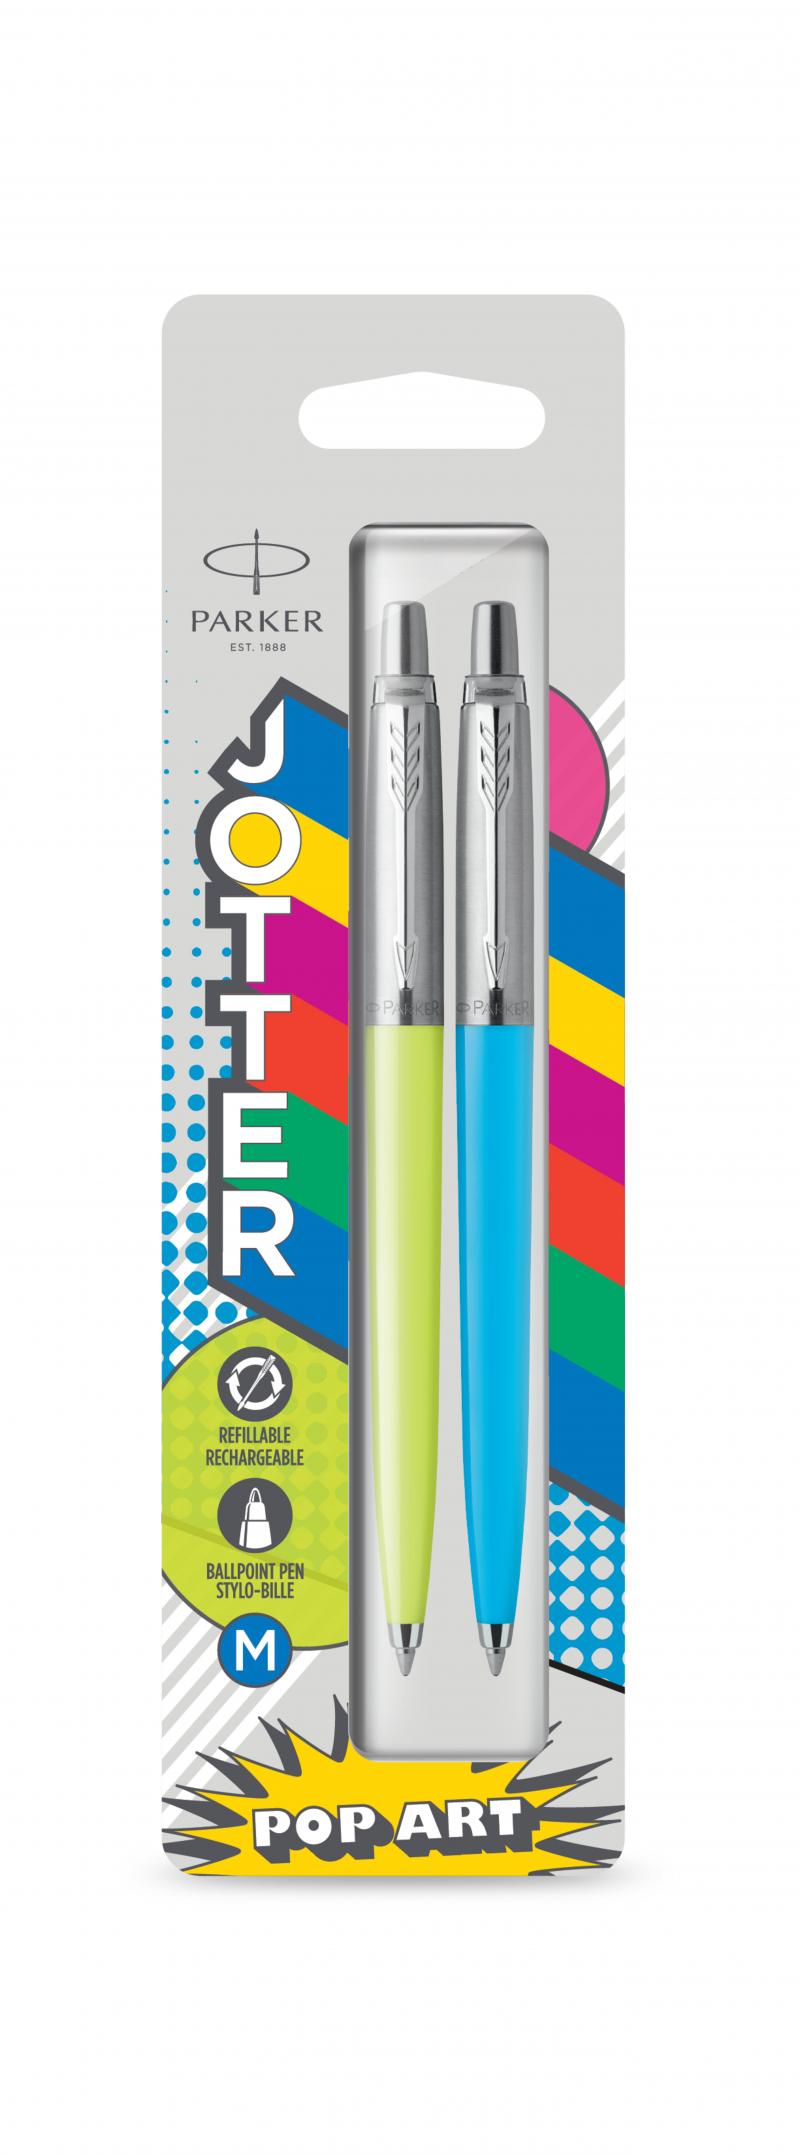 Jotter Originals 60's Pop Art Ballpen M Blue, Lime,Sky-blue 2-pak, Parker 2141357, 6stk